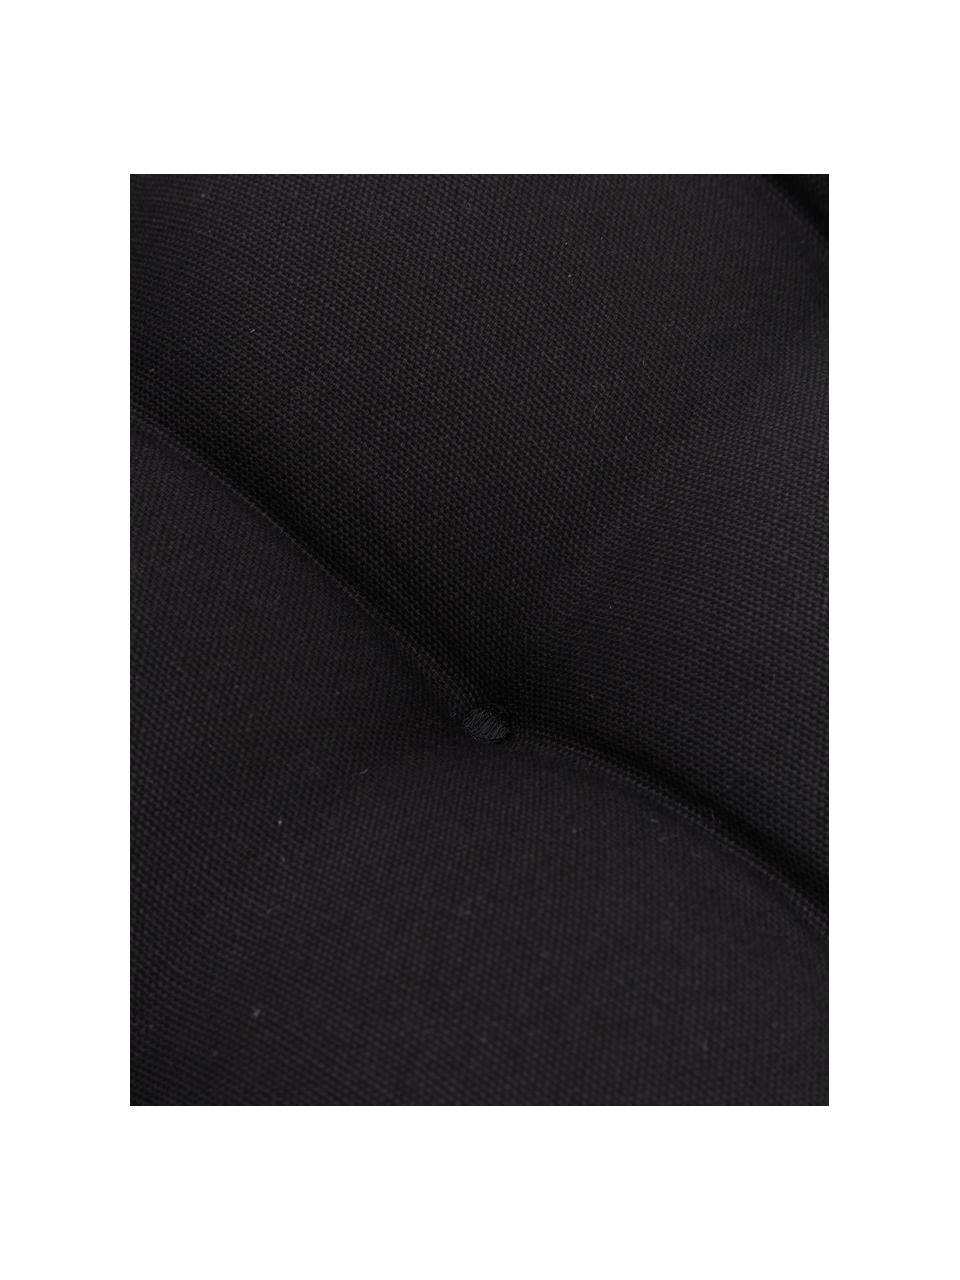 Katoenen stoelkussen Ava in zwart met kwastjes, Zwart, B 40 x L 40 cm